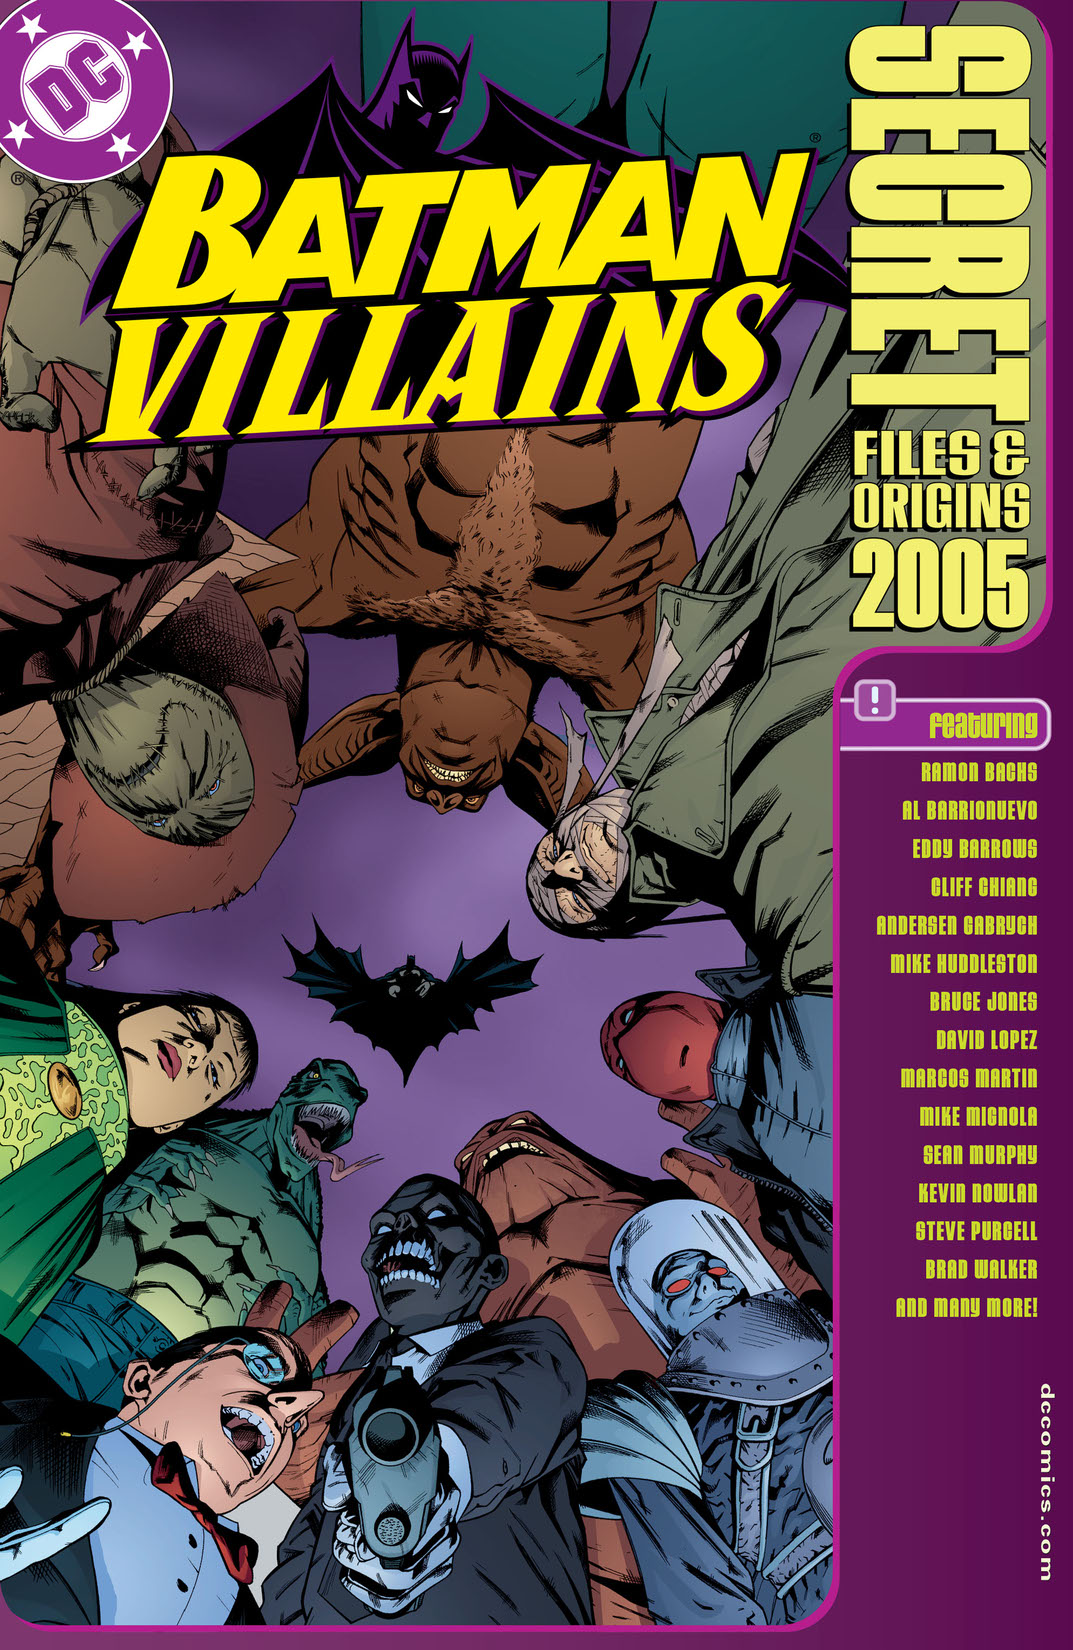 Batman Villains Secret Files #1 preview images